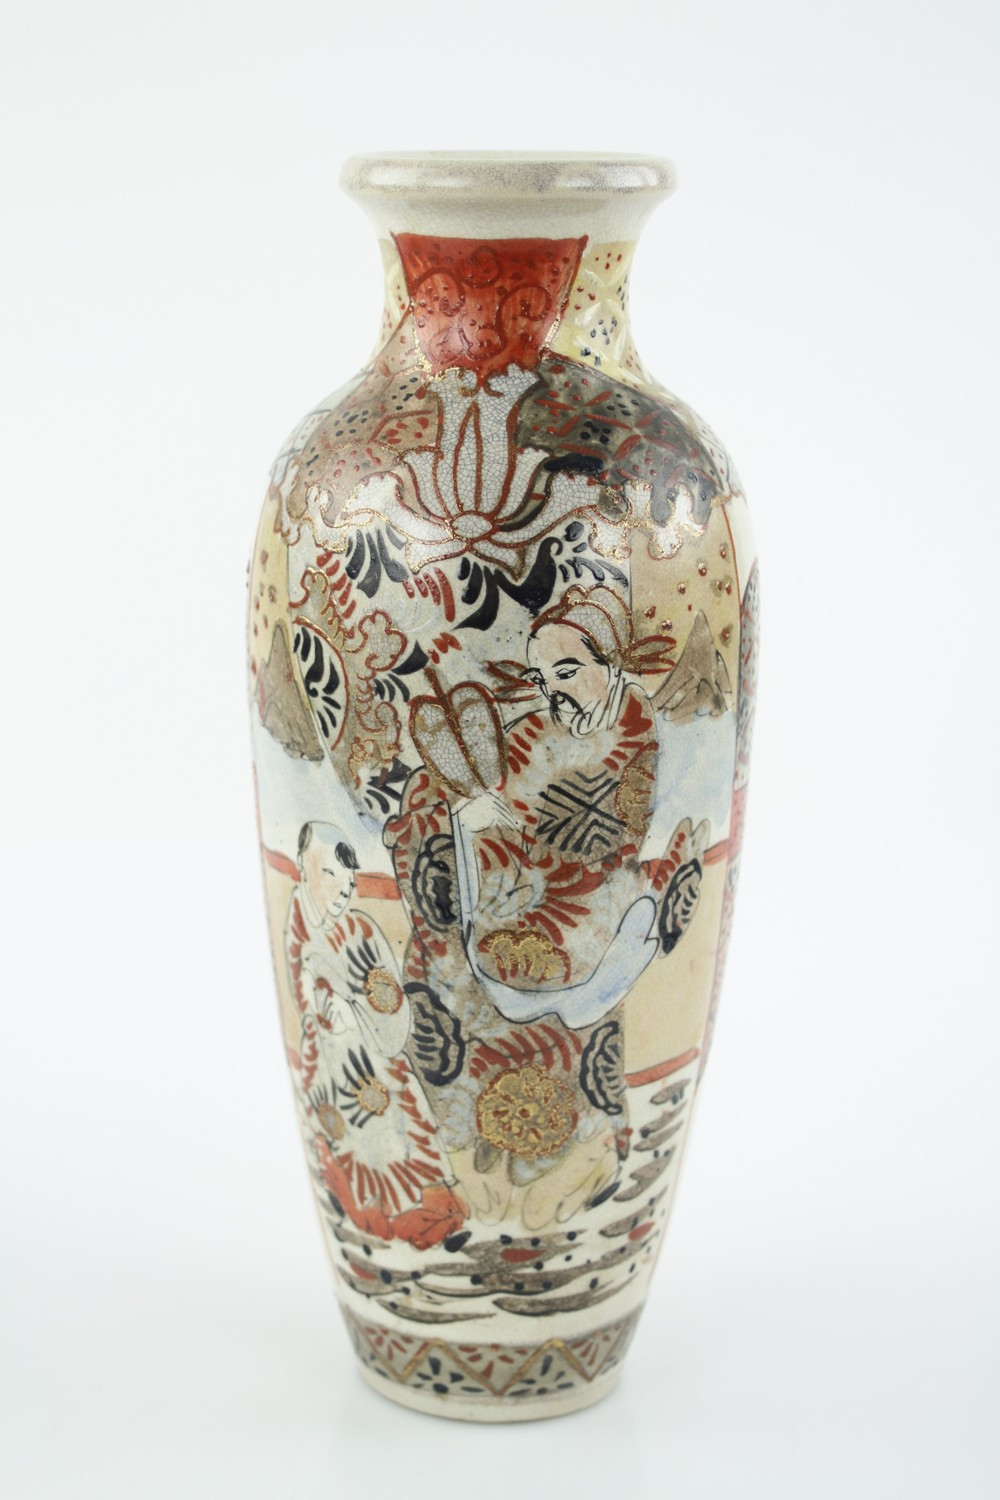 15 Wonderful Royal Satsuma Vase 2024 free download royal satsuma vase of antyk orientalny wazon satsuma 7232042048 oficjalne intended for antyk orientalny wazon satsuma